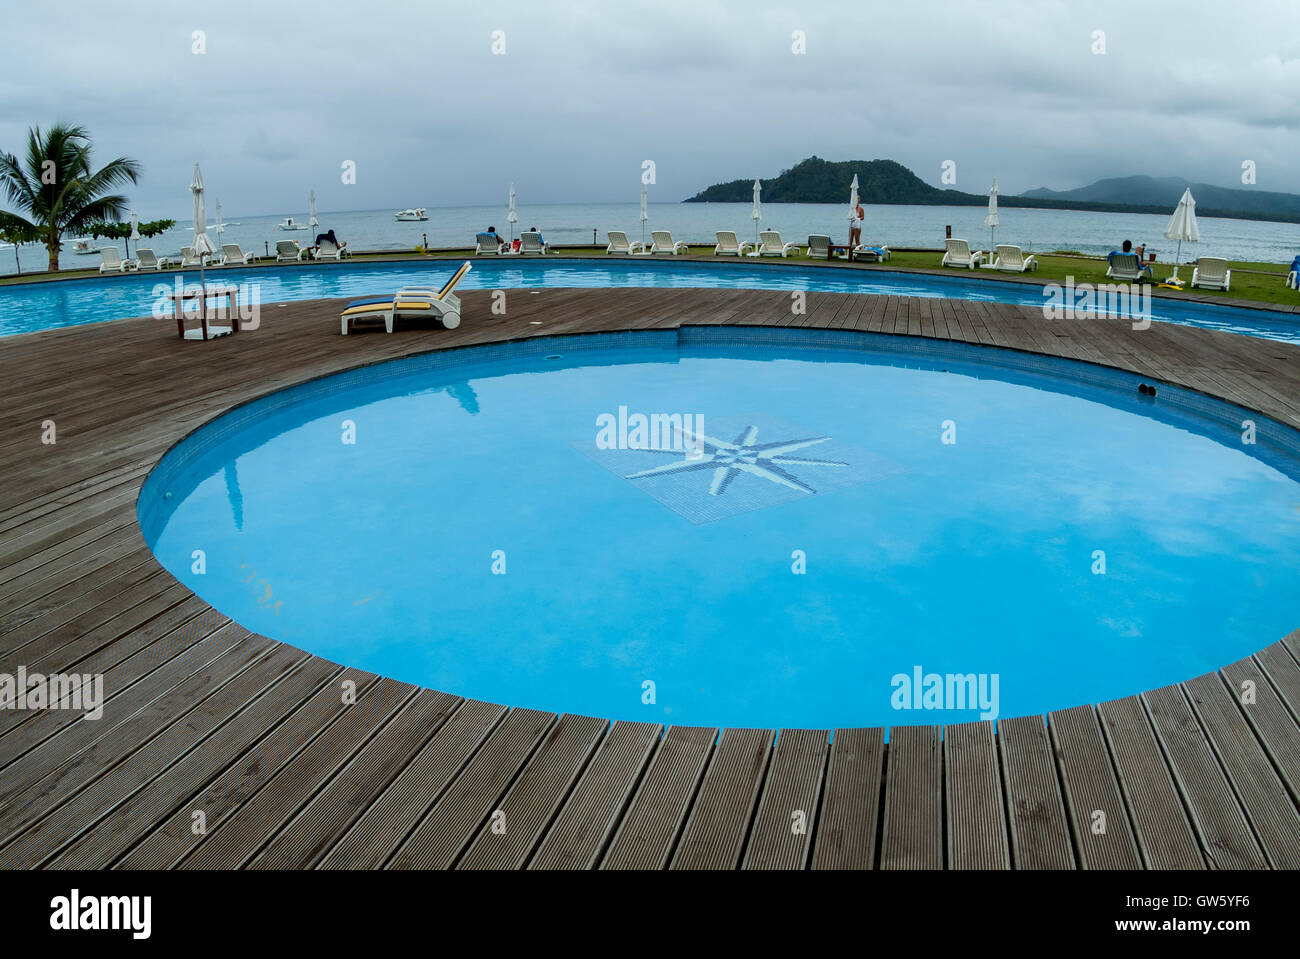 Ilhéu das Rolas Resort. Ilhéu das Rolas, São Tomé e Príncipe Stock Photo -  Alamy